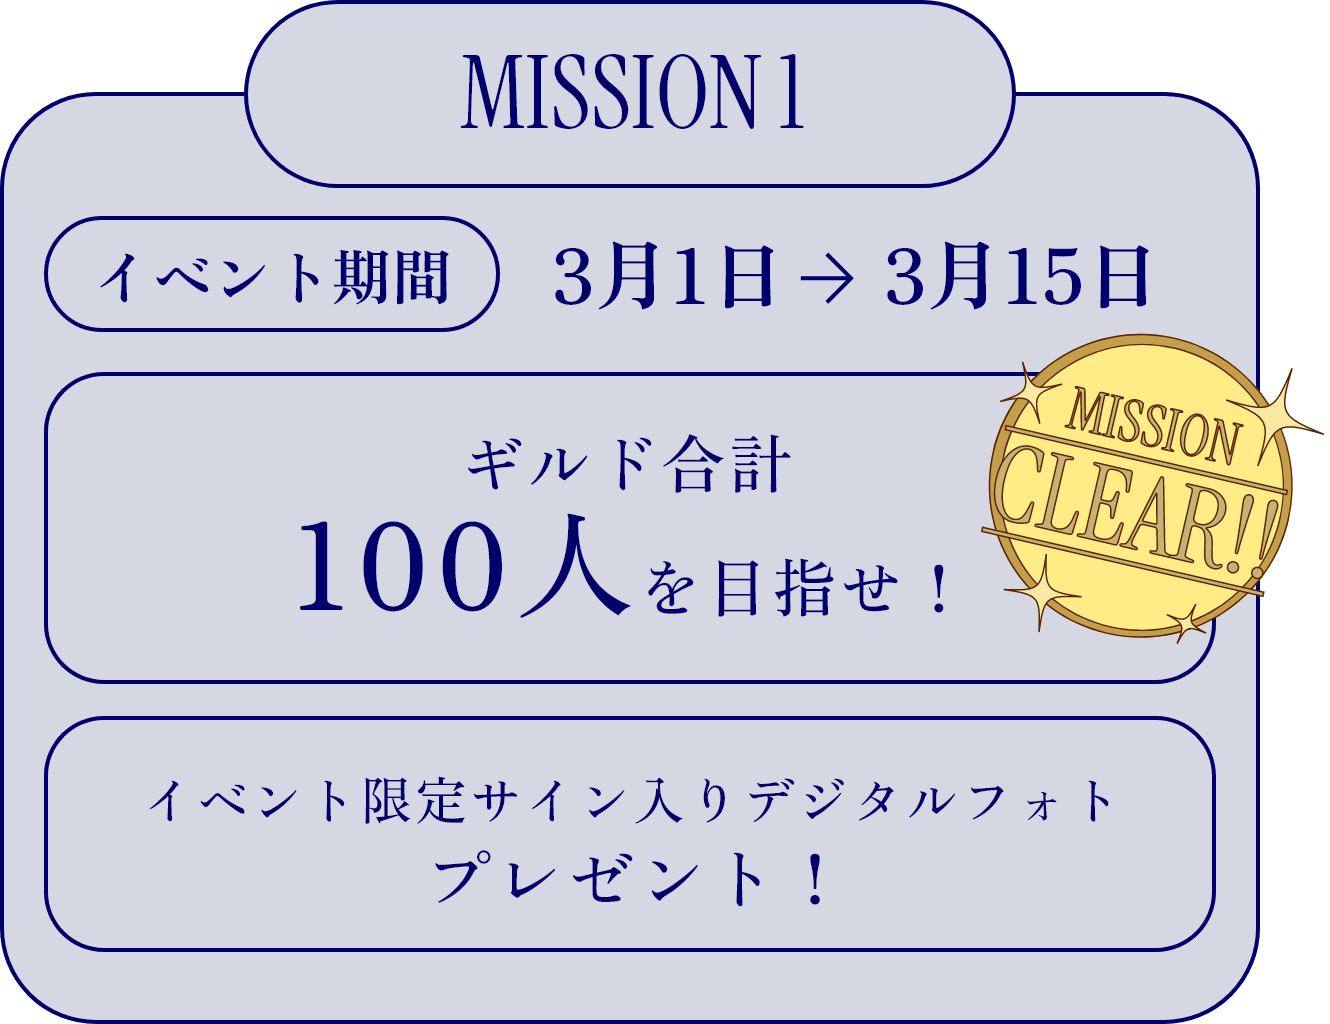 MISSION 1